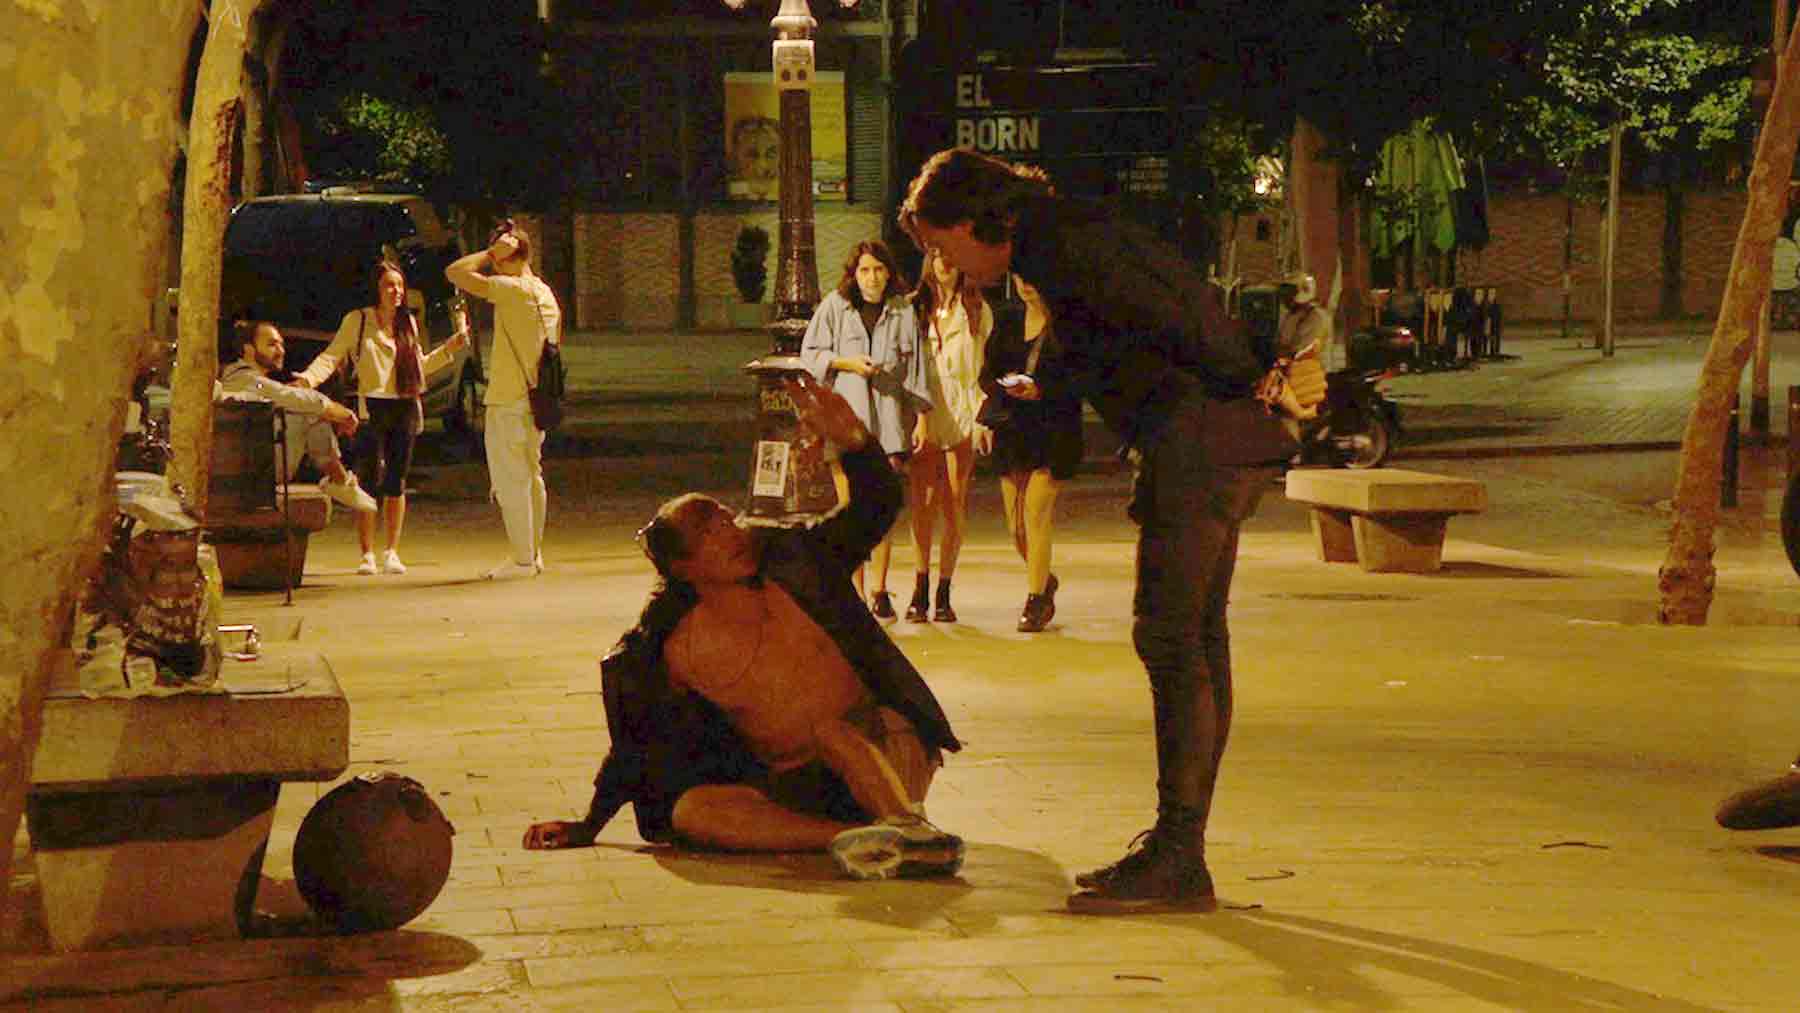 Barcelona ciudad sin ley por la noche: «Es normal que nadie quiera venir a trabajar, es peligroso»